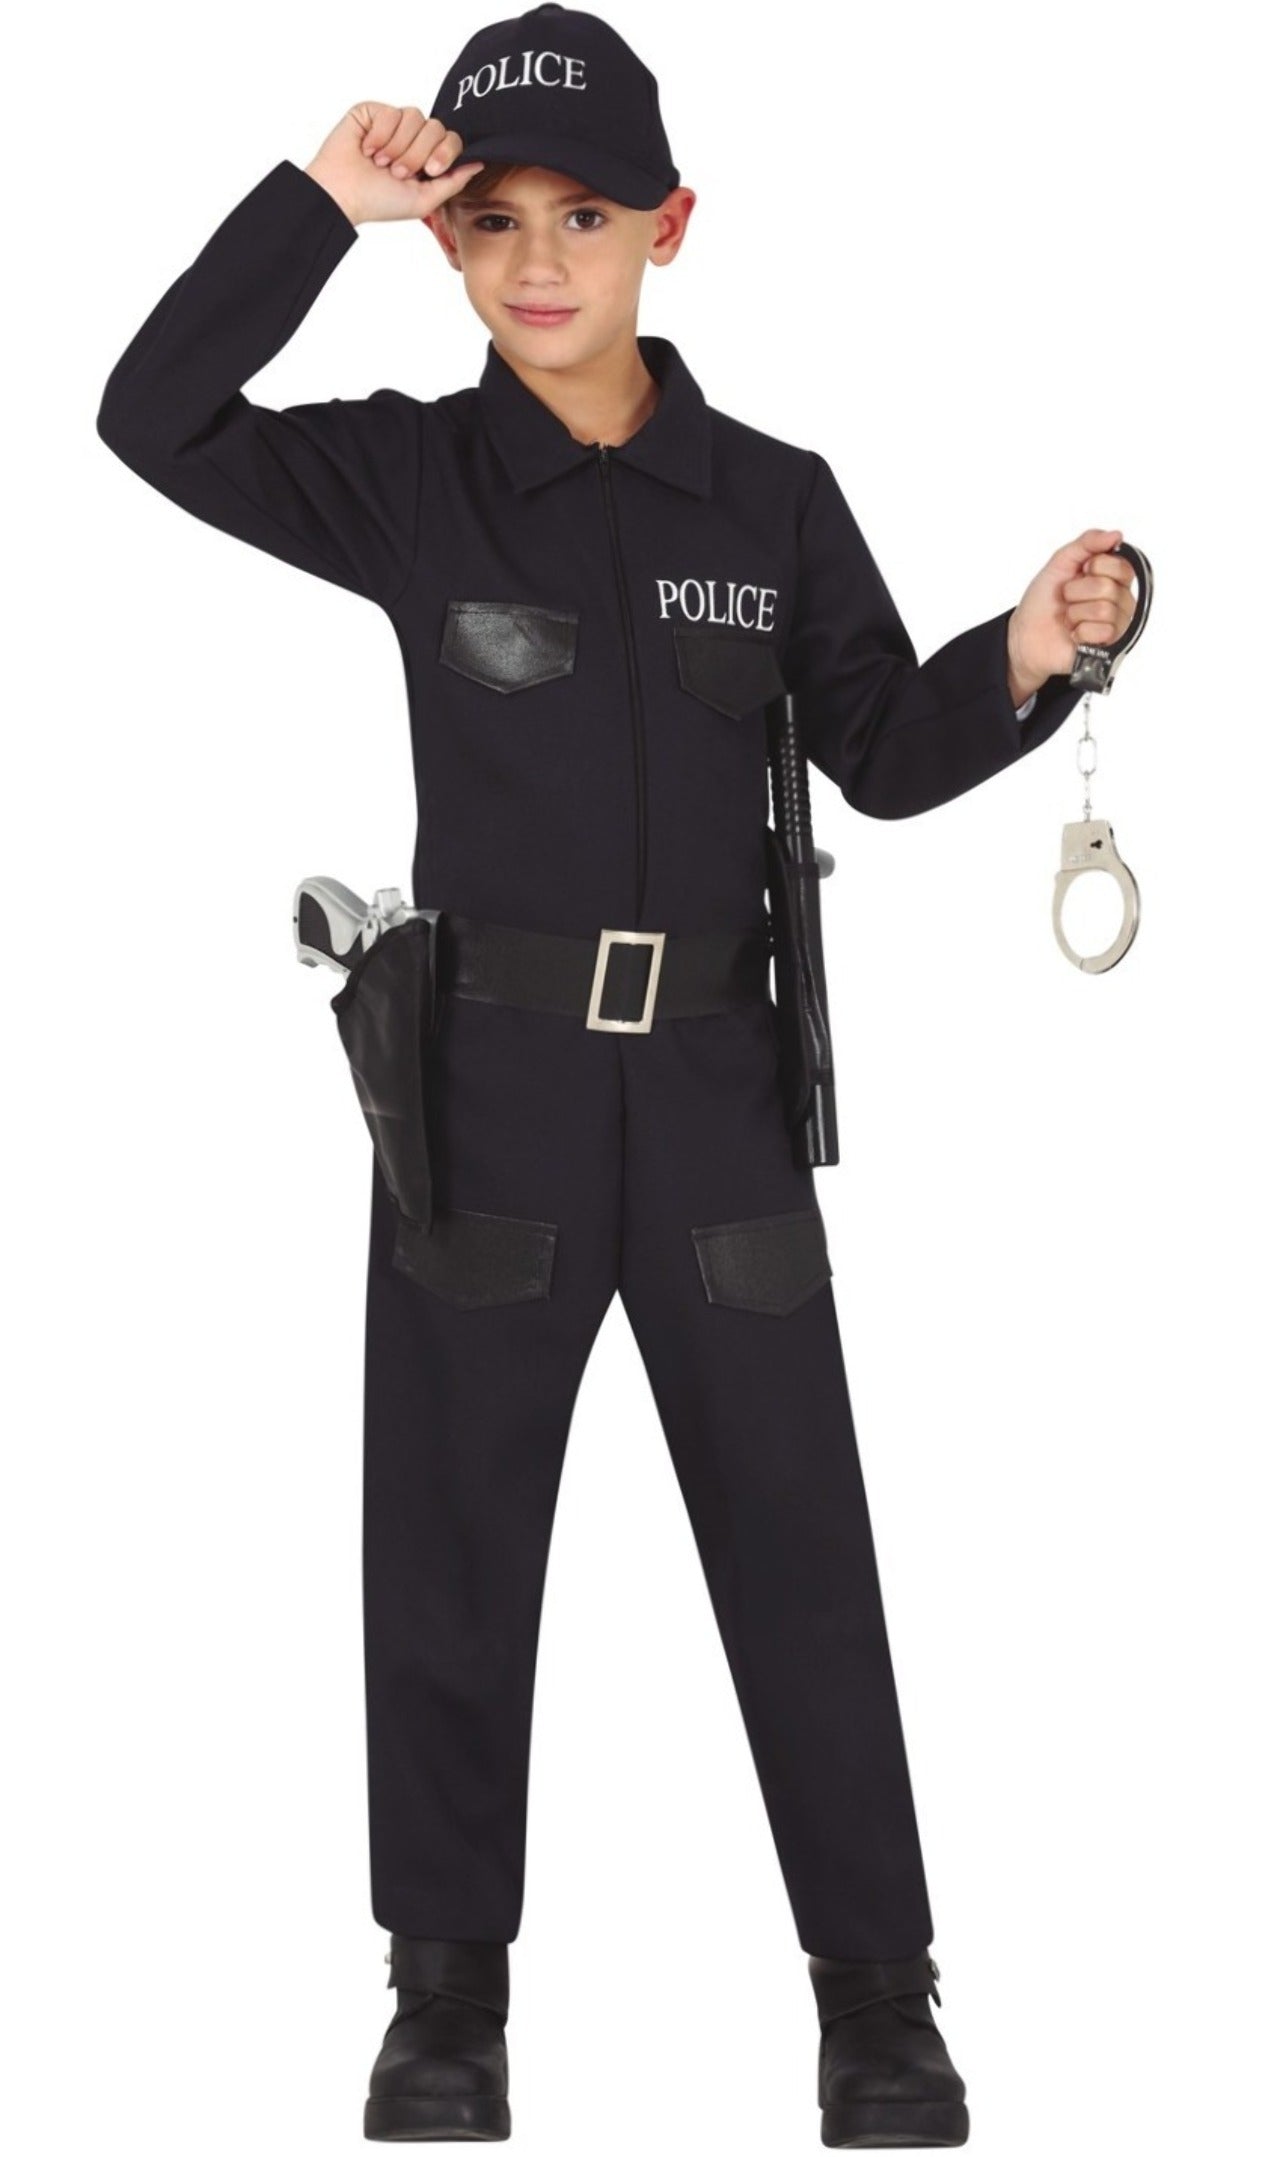 Disfraz de policía para niños con diseño de uniforme de policía